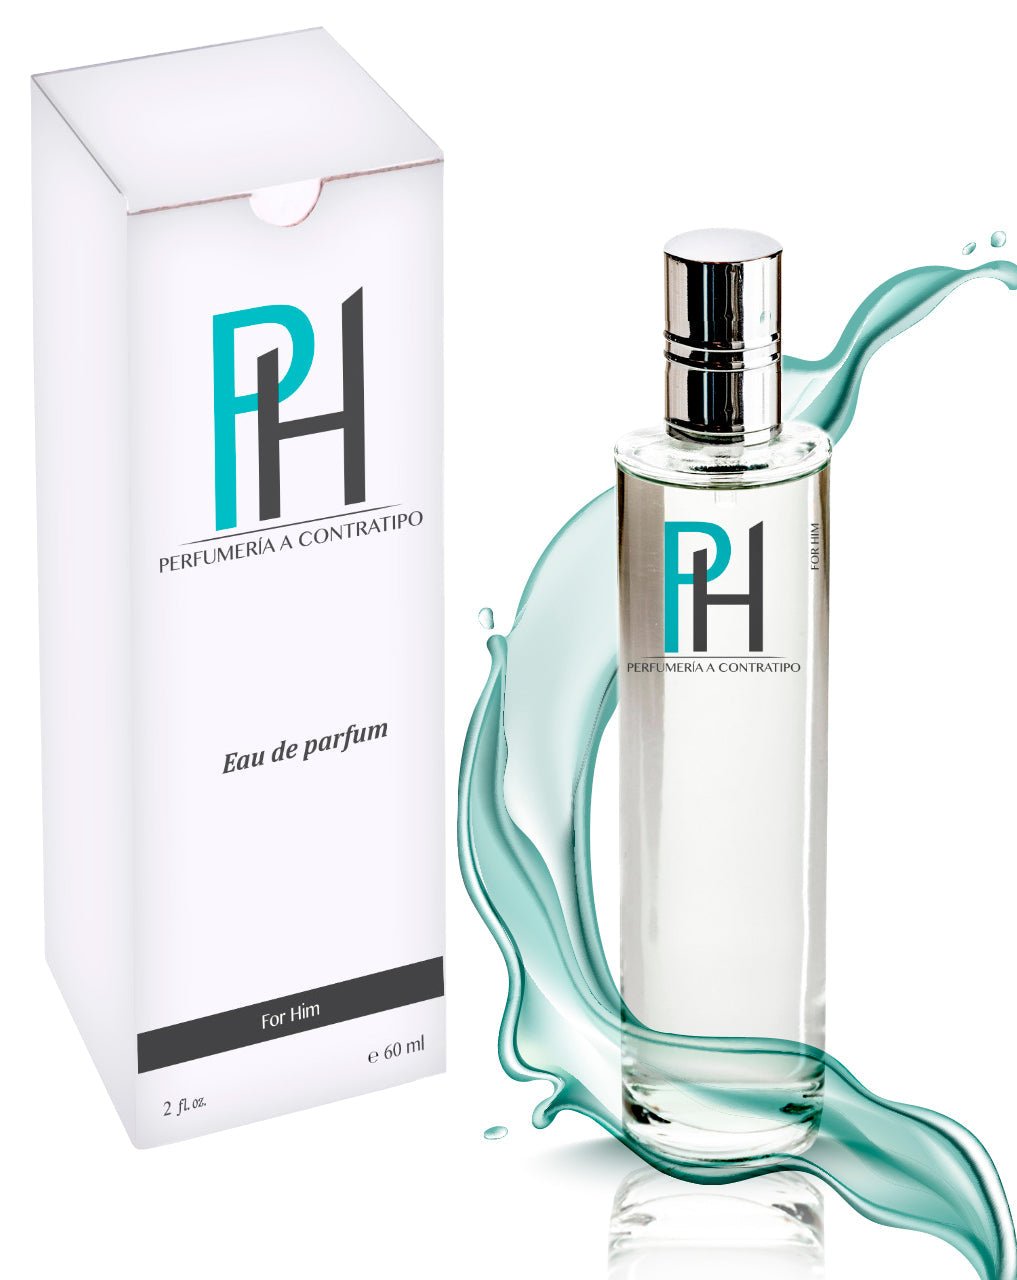 Perfume Lacoste L Homme Intense De 60 ml - PH Perfumería a Contratipo